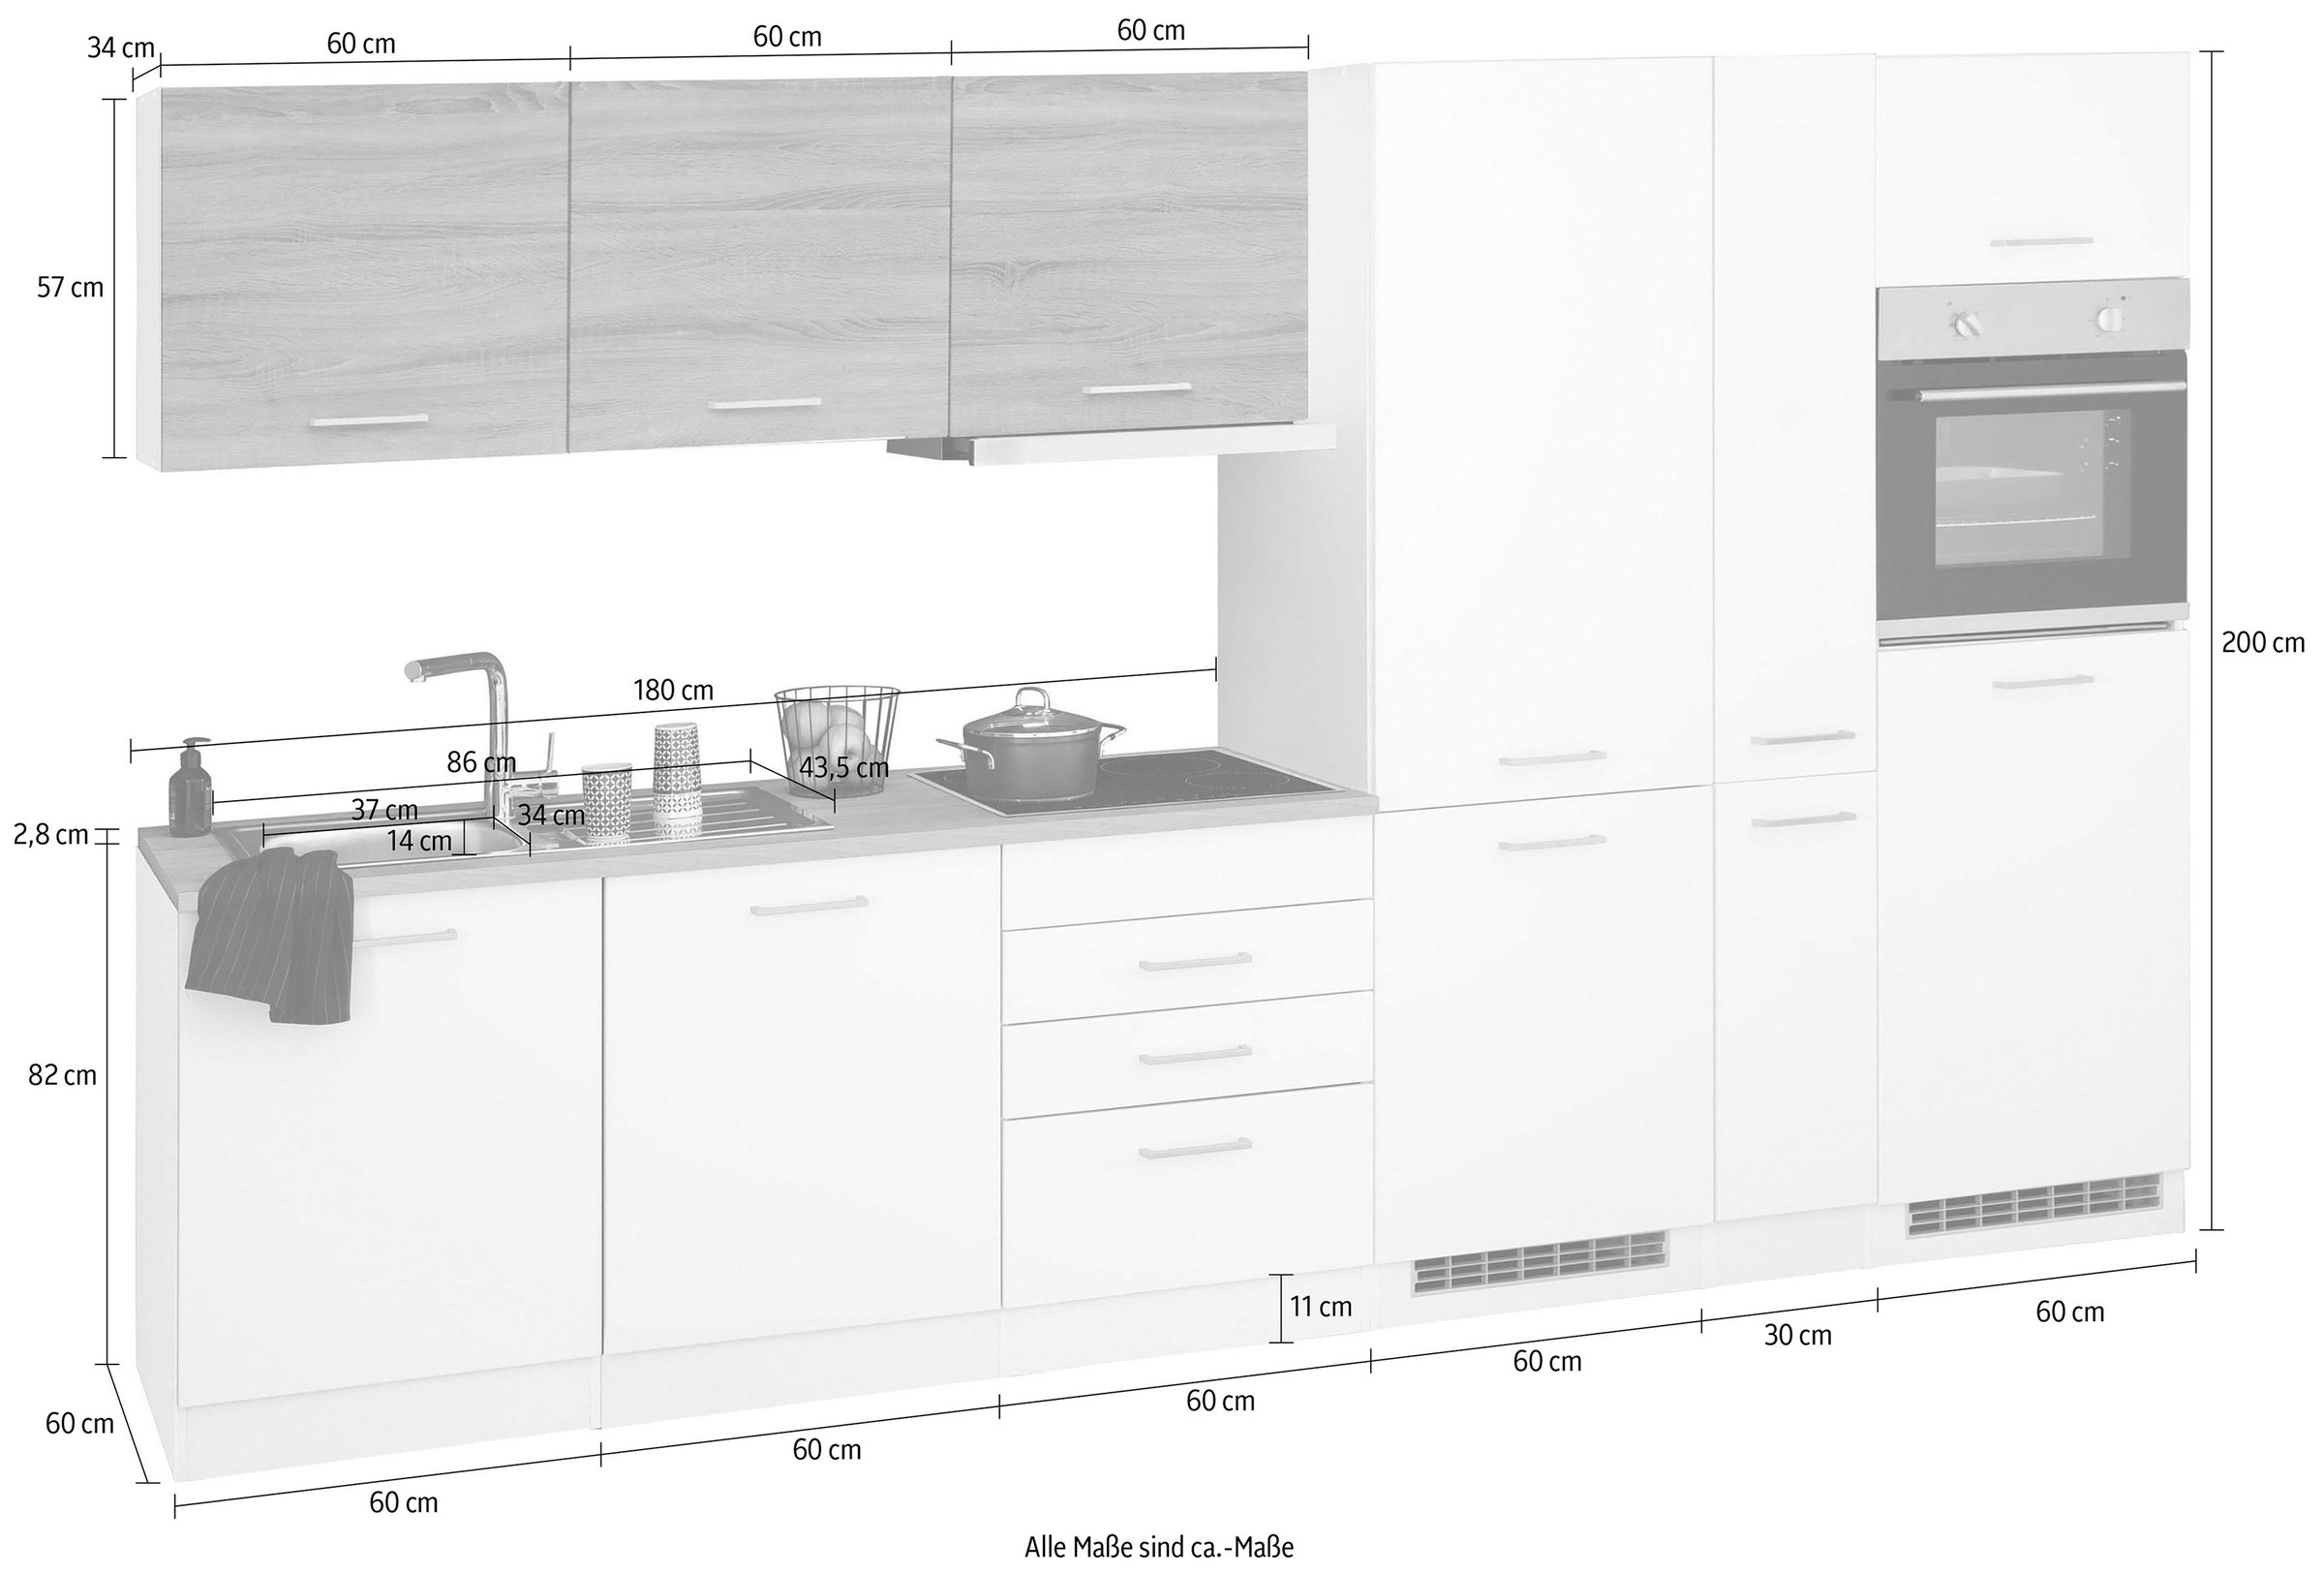 HELD MÖBEL Küchenzeile »Visby«, mit E-Geräten, 330 cm,inkl. Kühl/Gefrierkombination und Geschirrspüler